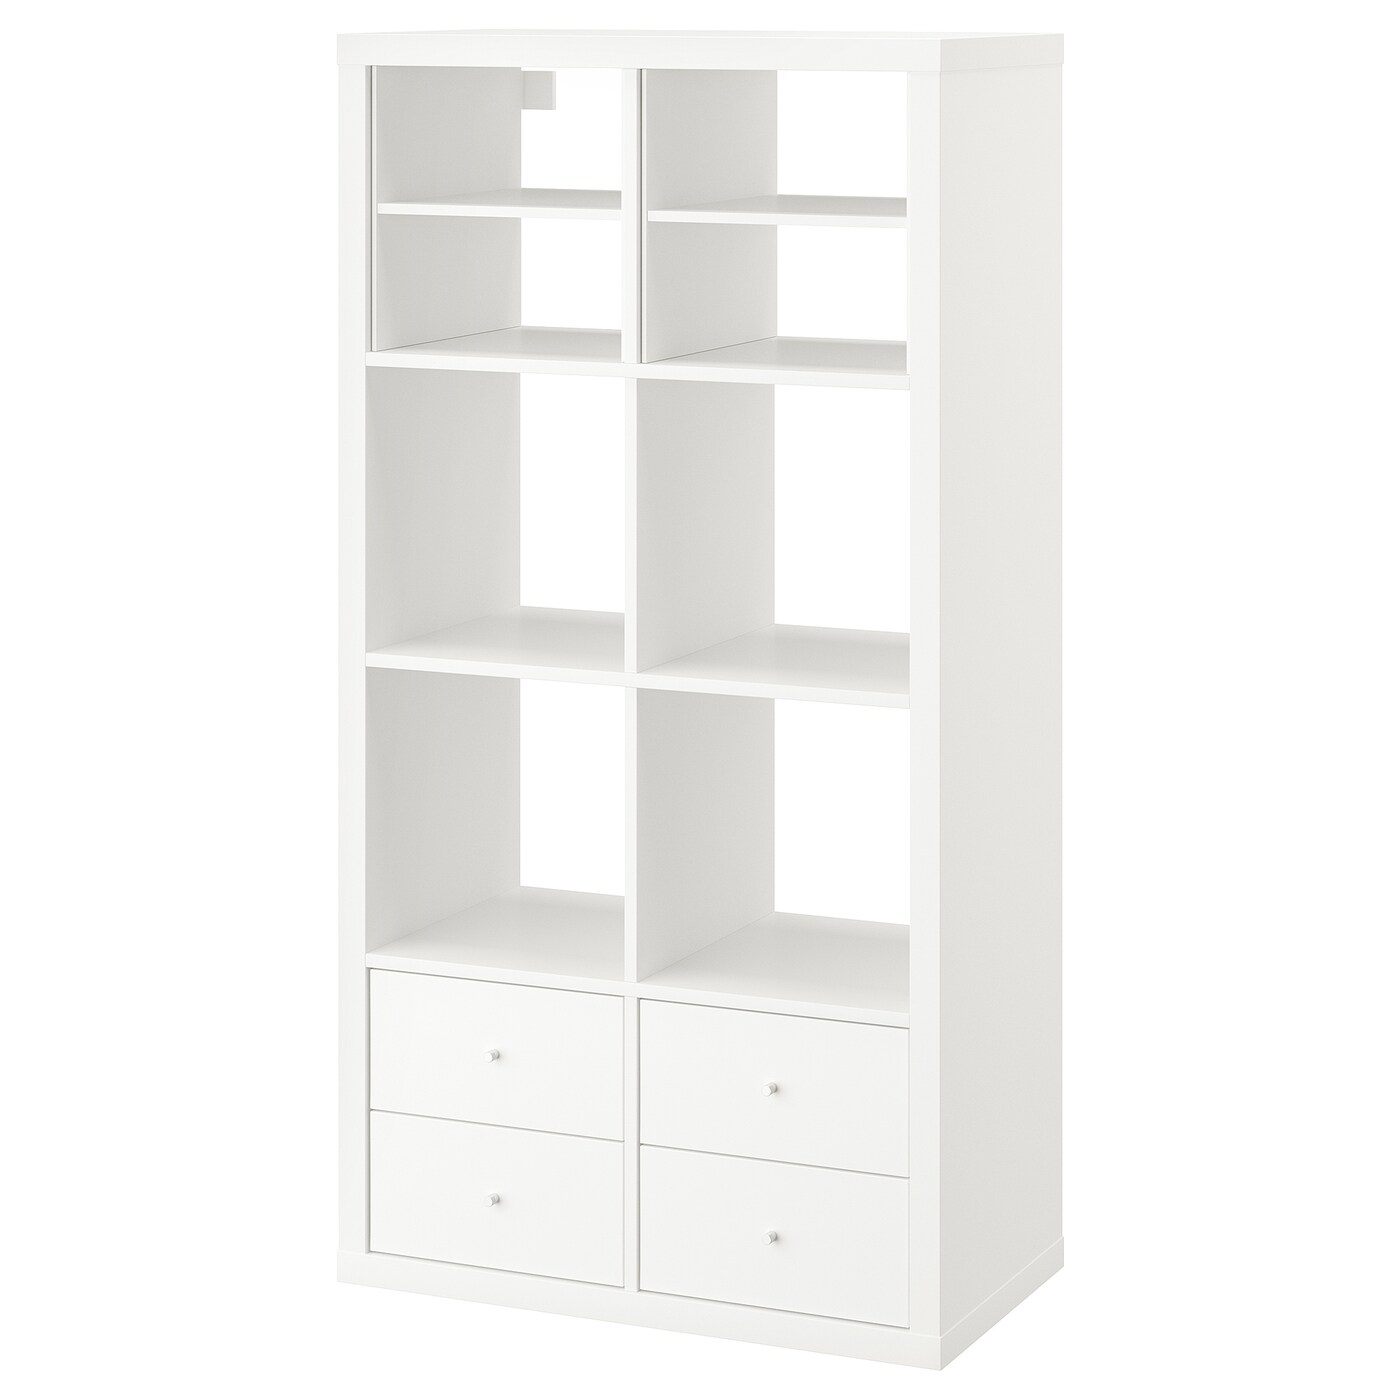 Книжный шкаф - IKEA KALLAX, 147х39х77 см, белый, КАЛЛАКС ИКЕА